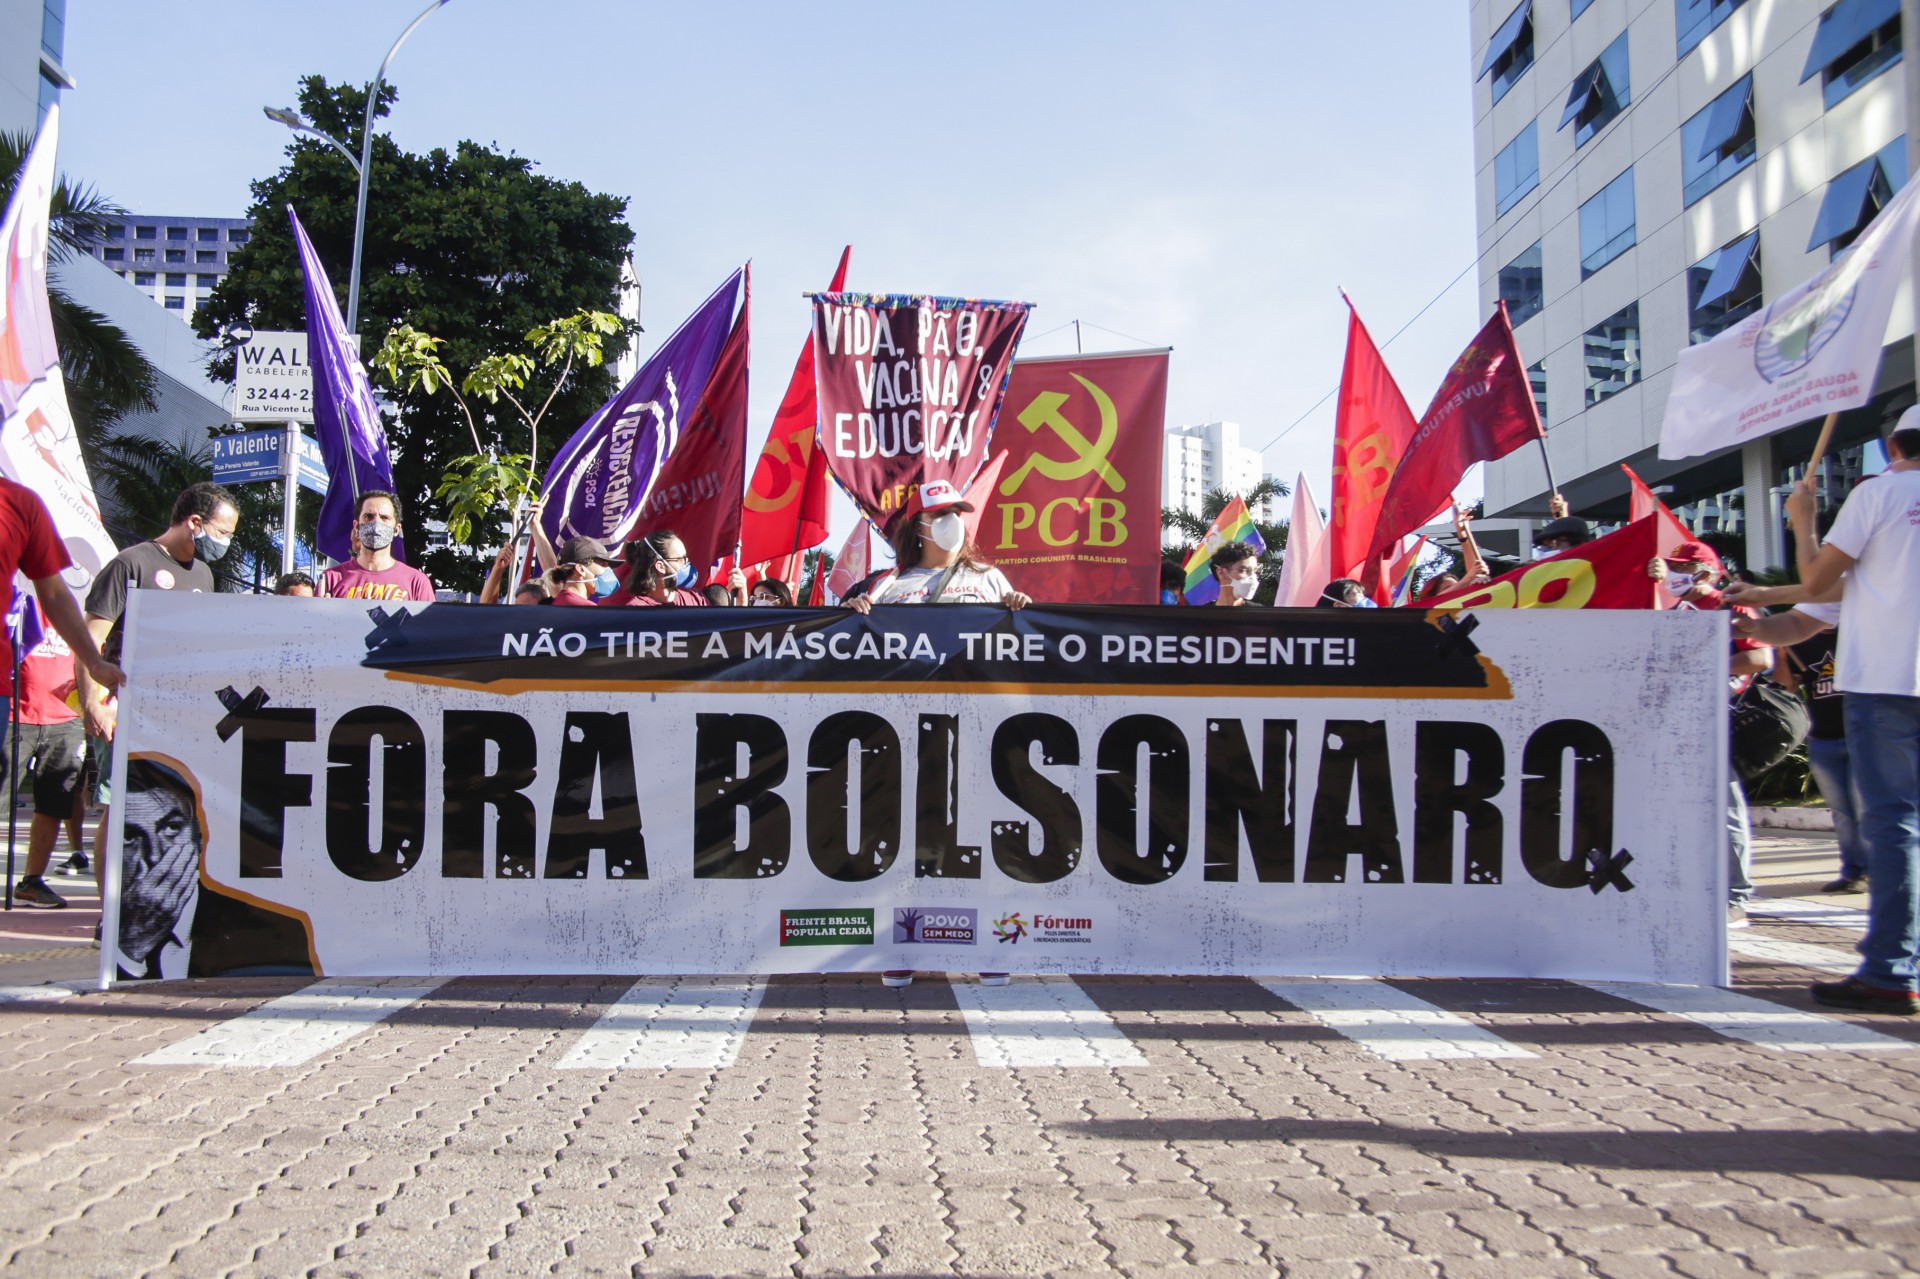 Protesto contra Bolsonaro no último dia 3 de julho, na Praça Portugal (Foto: Thais Mesquita)